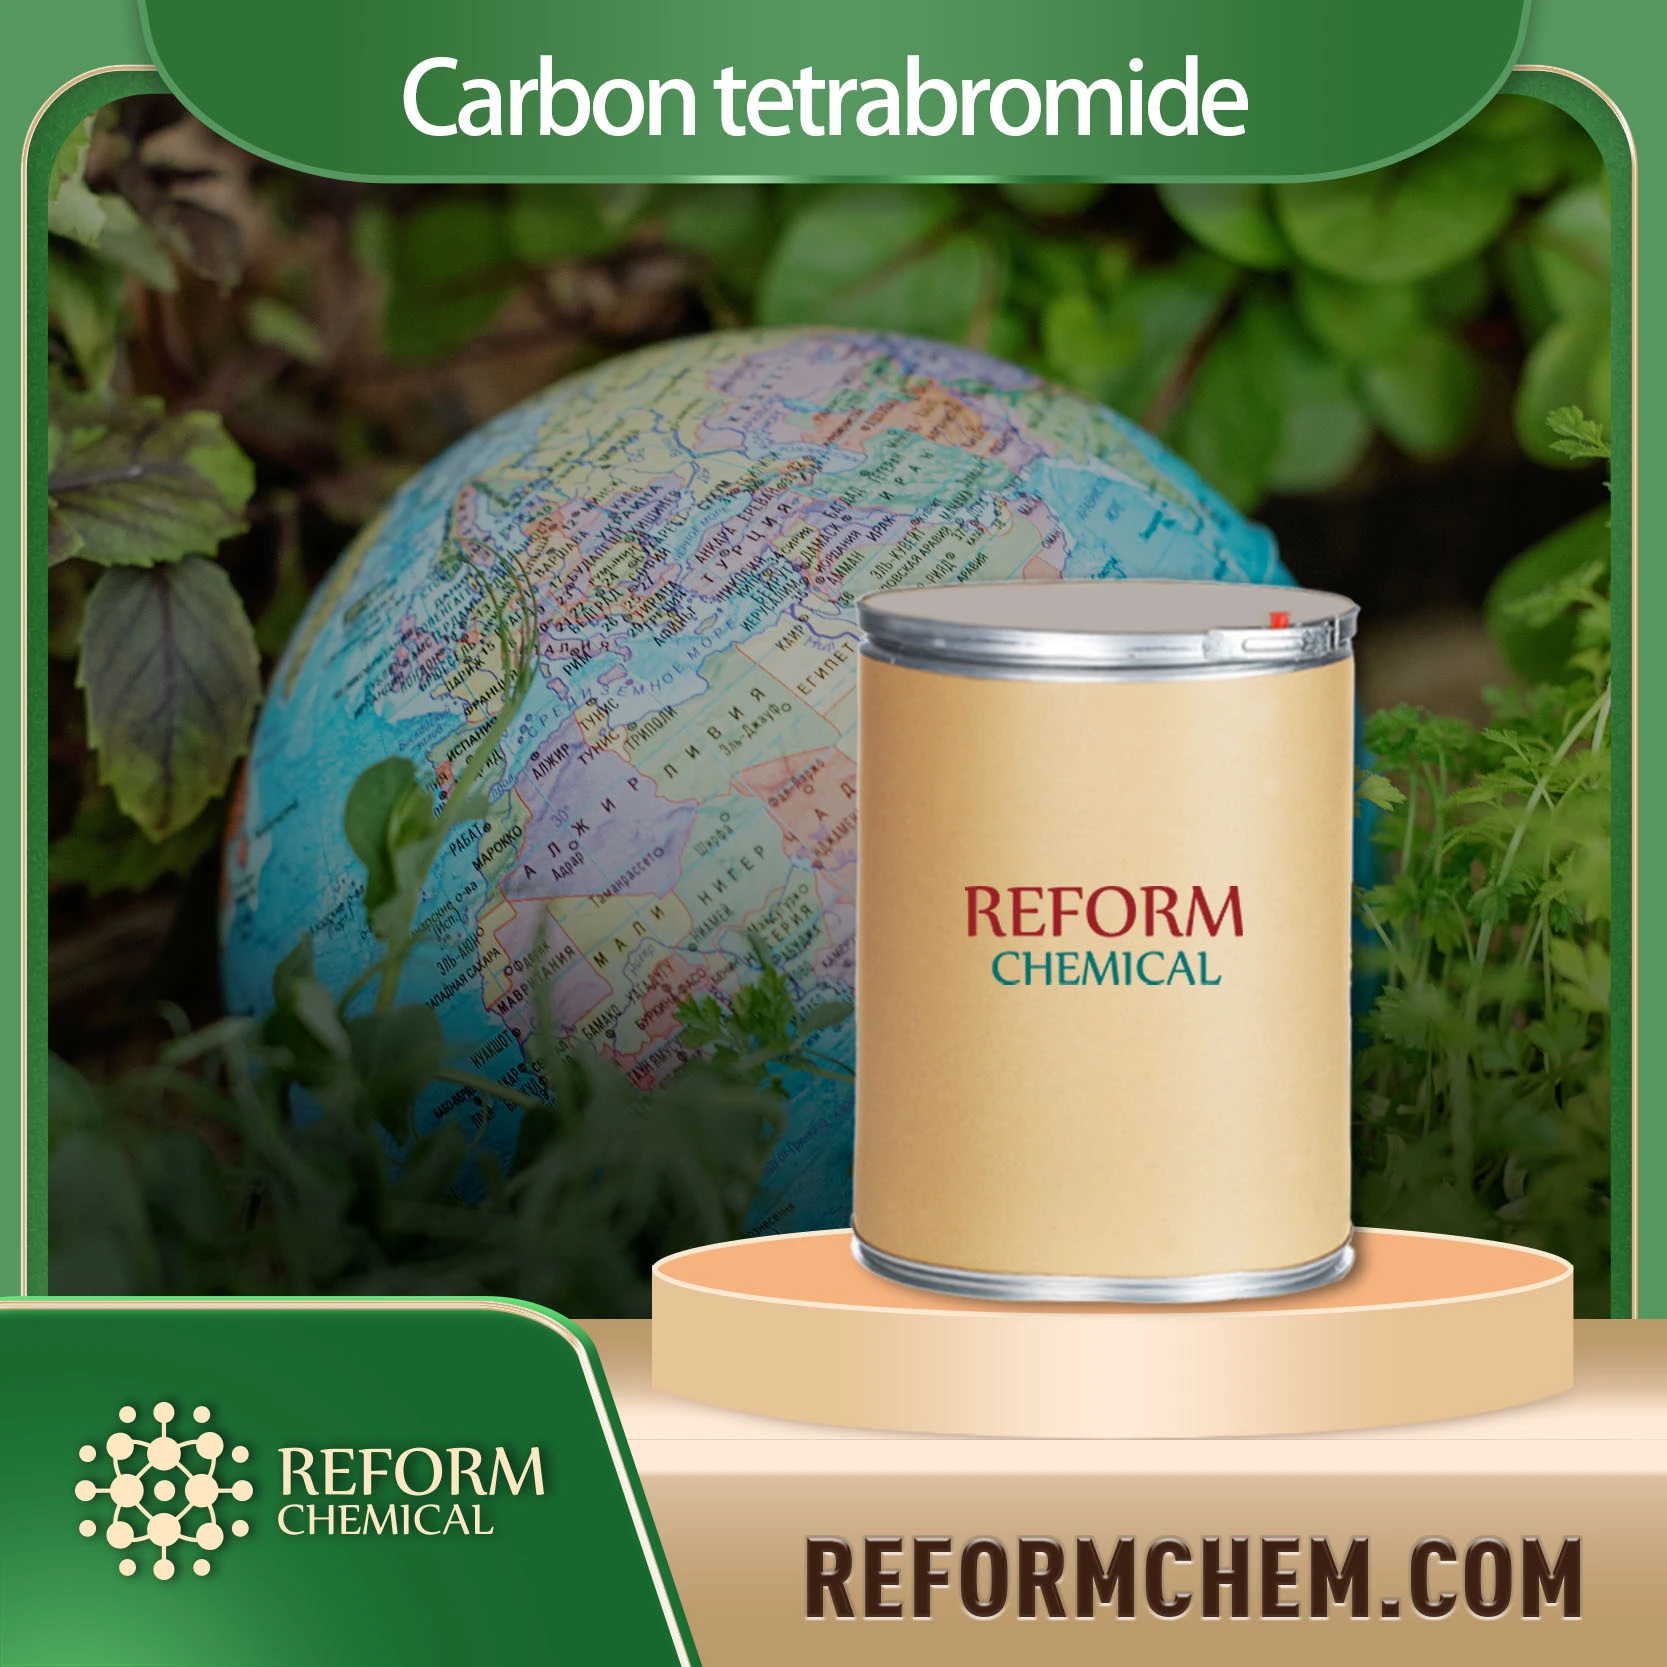 Carbon tetrabromide